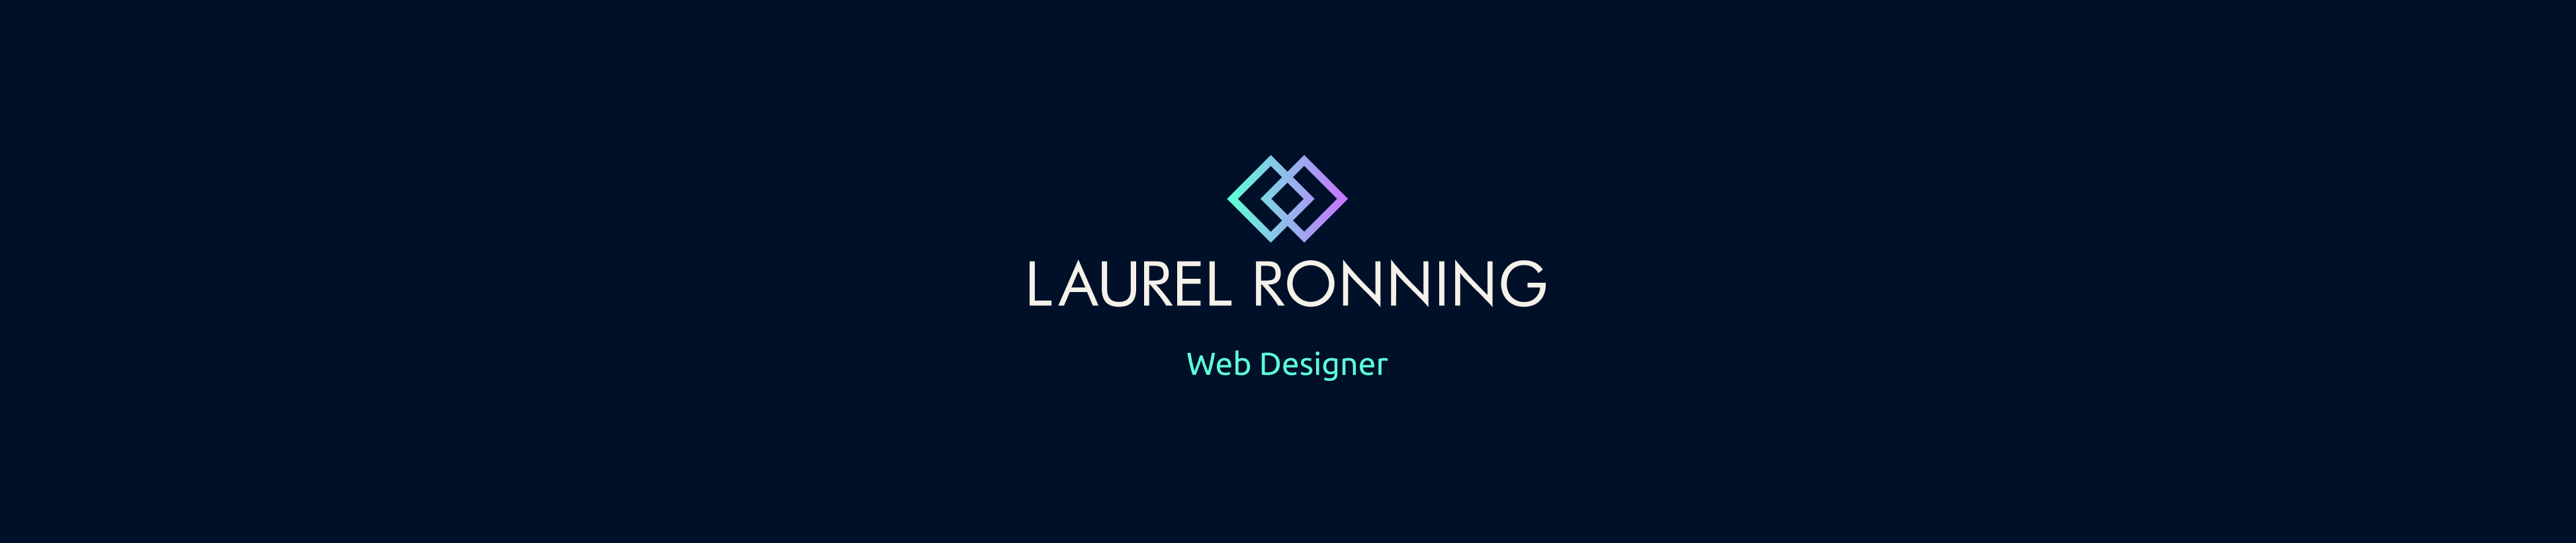 Баннер профиля Laurel Ronning